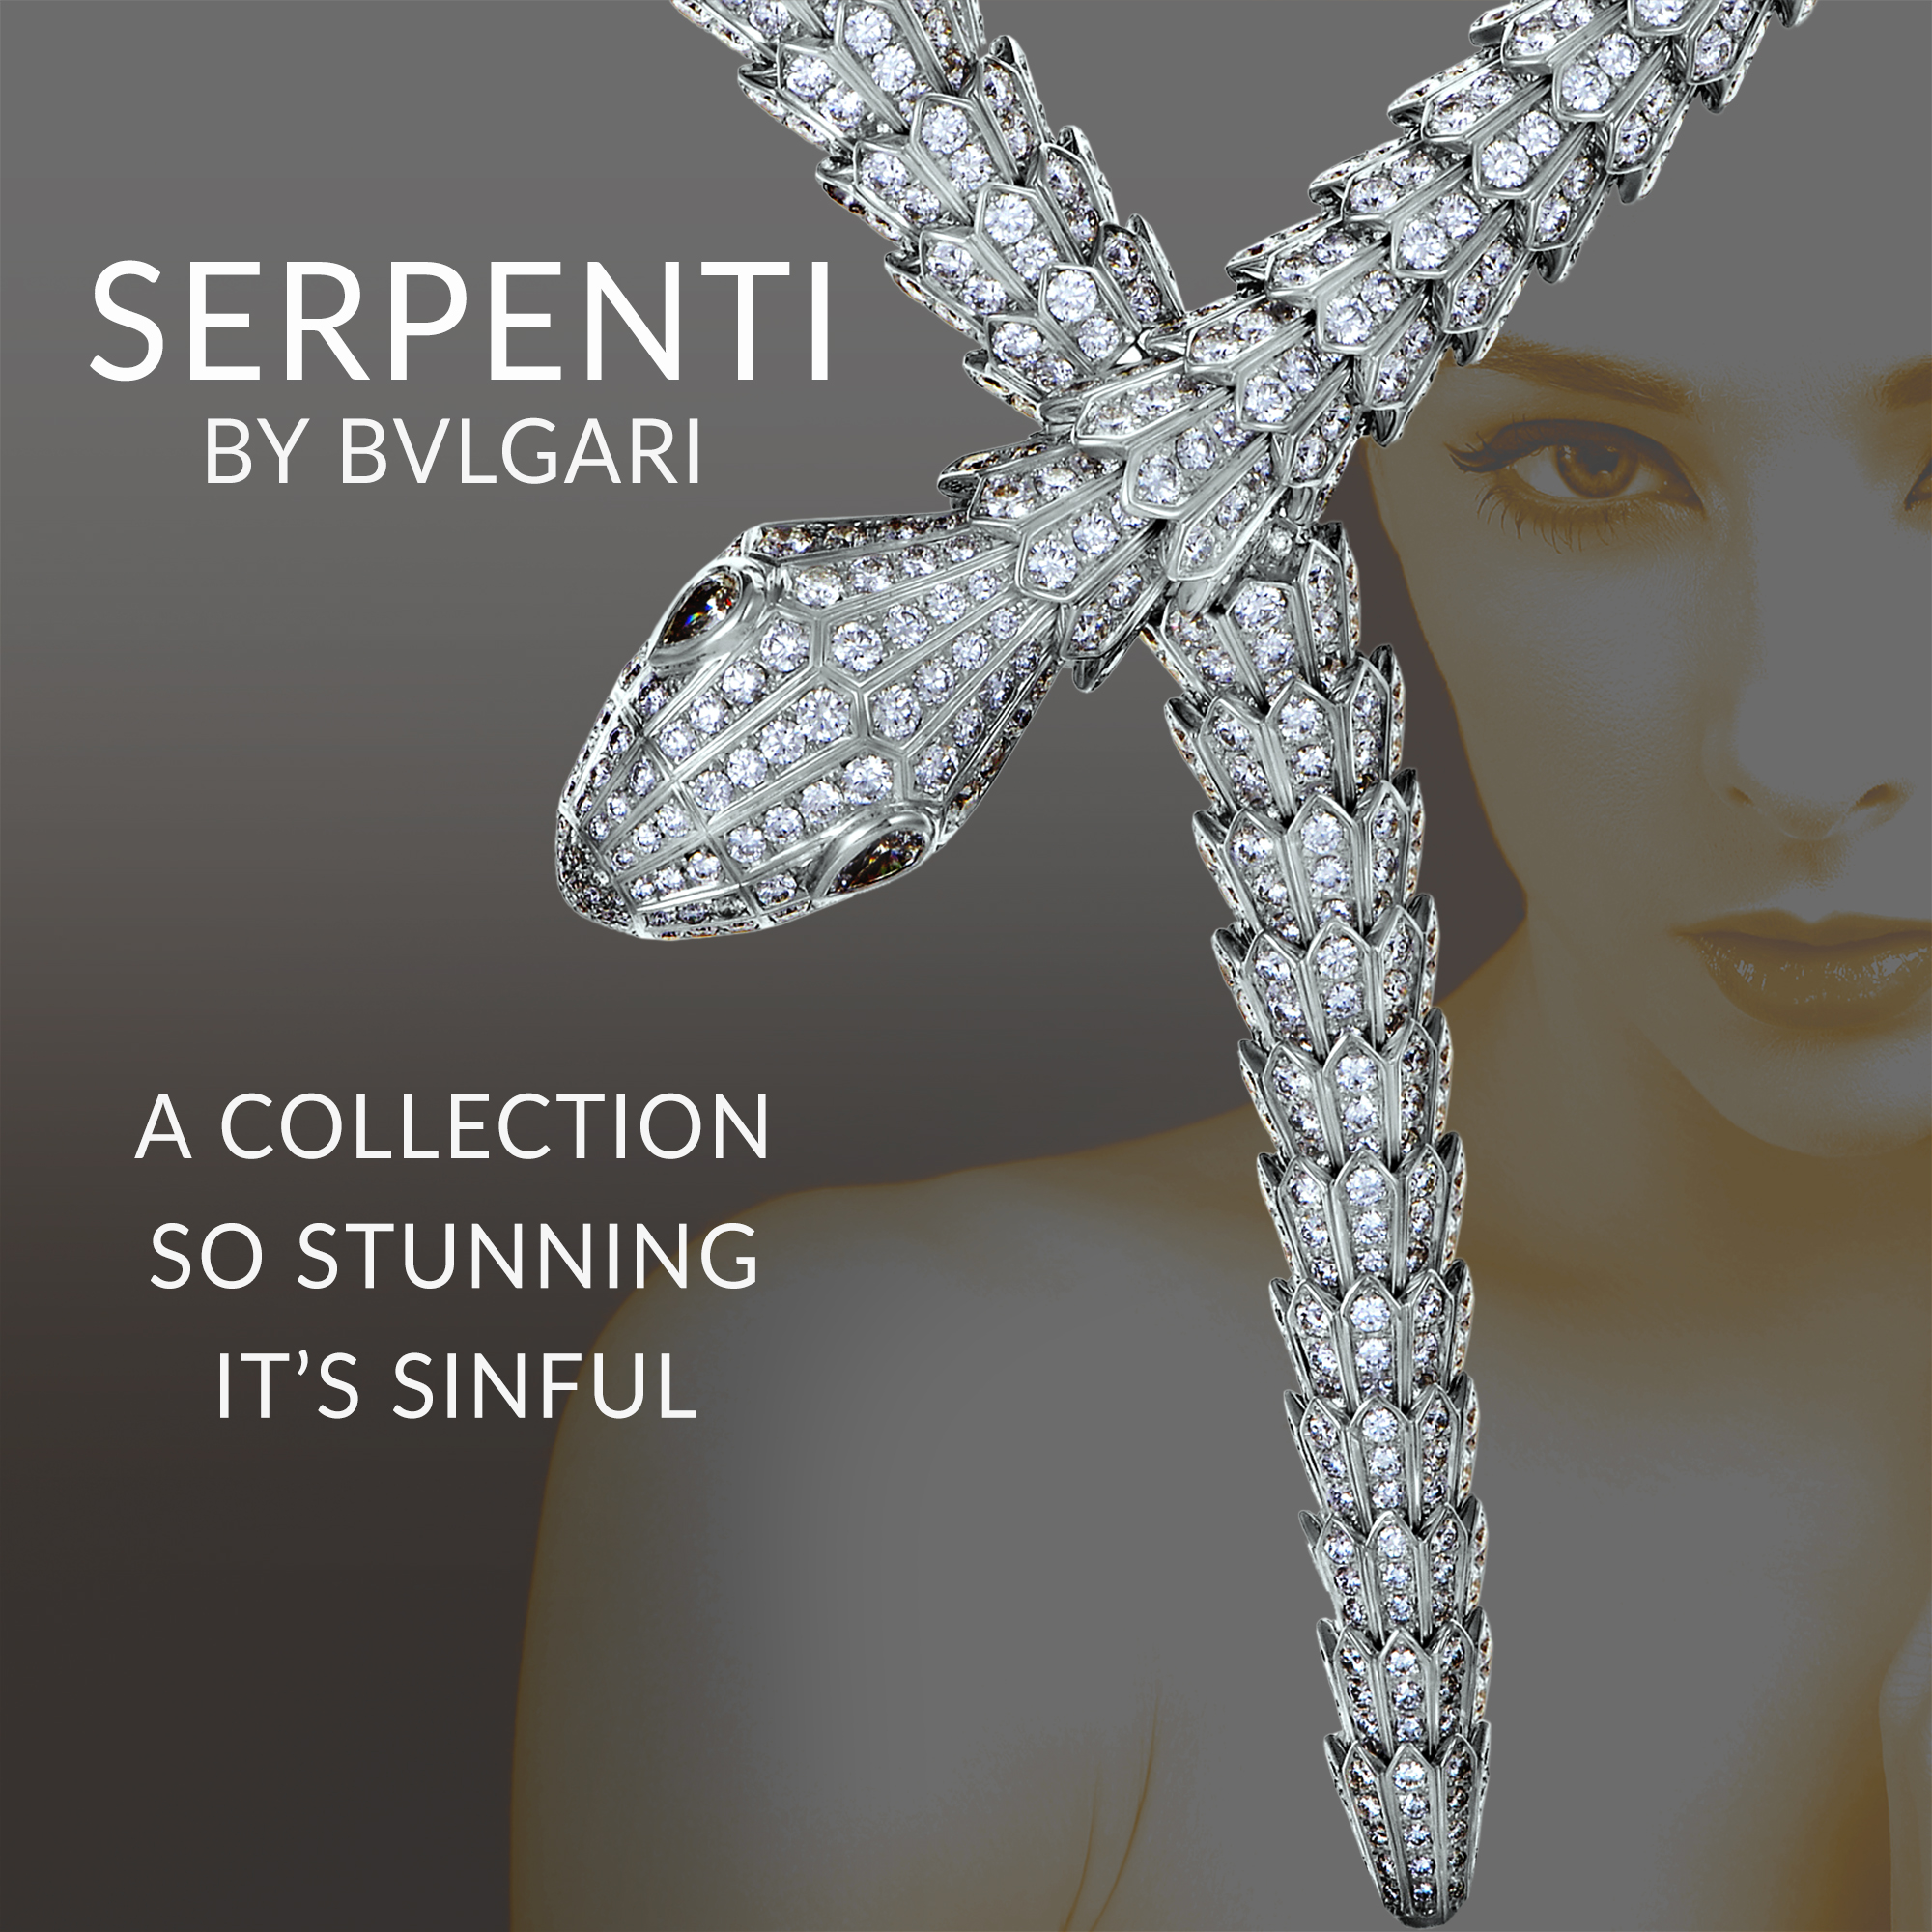 bulgari new serpenti collection